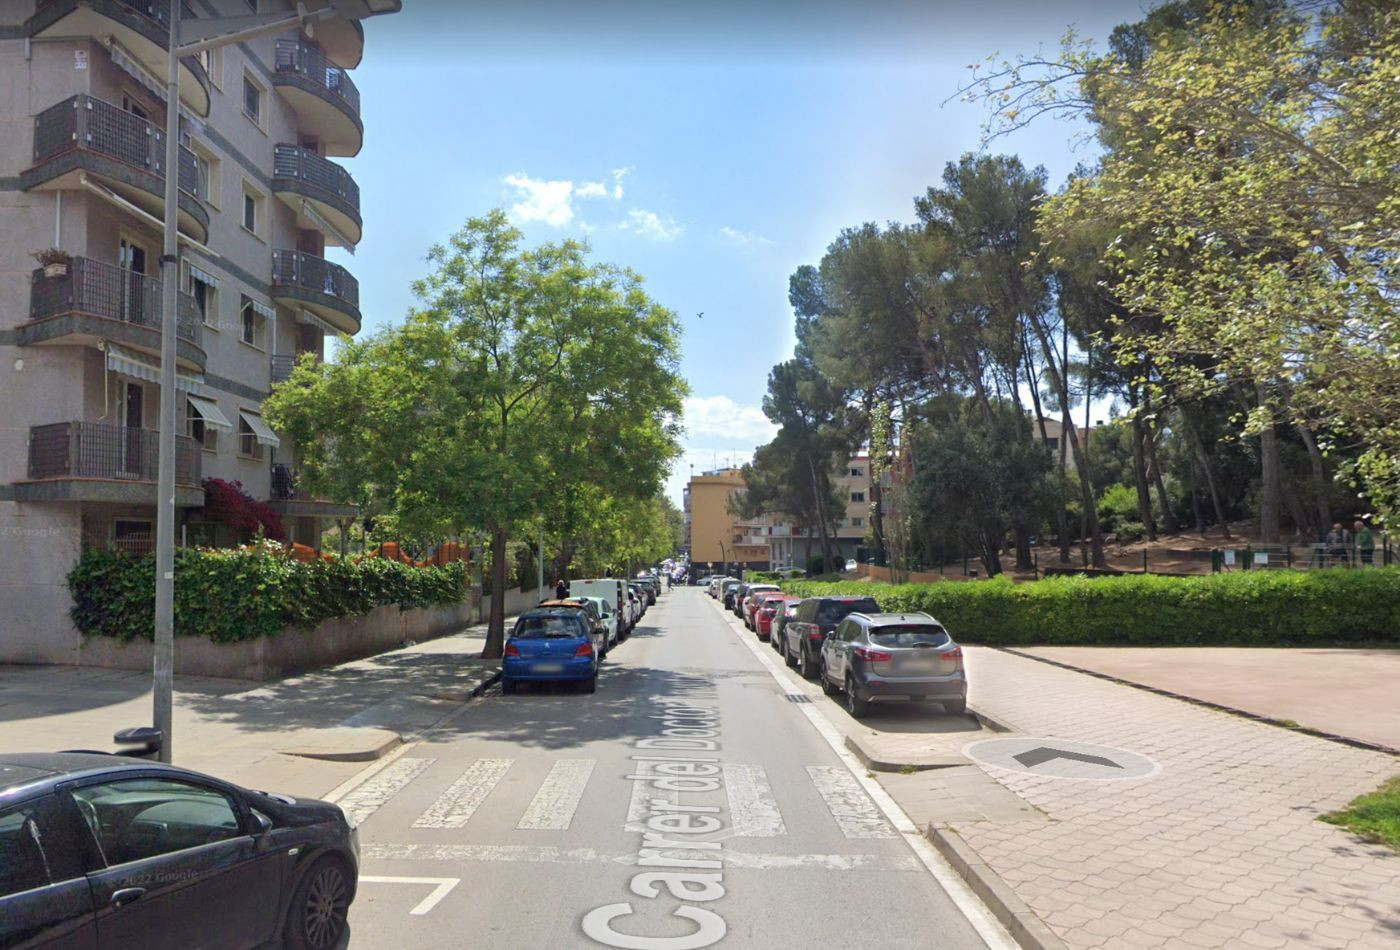 La calle de Doctor Trueta de Castelldefels, donde han apalizado a un mosso fuera de servicio / GOOGLE MAPS